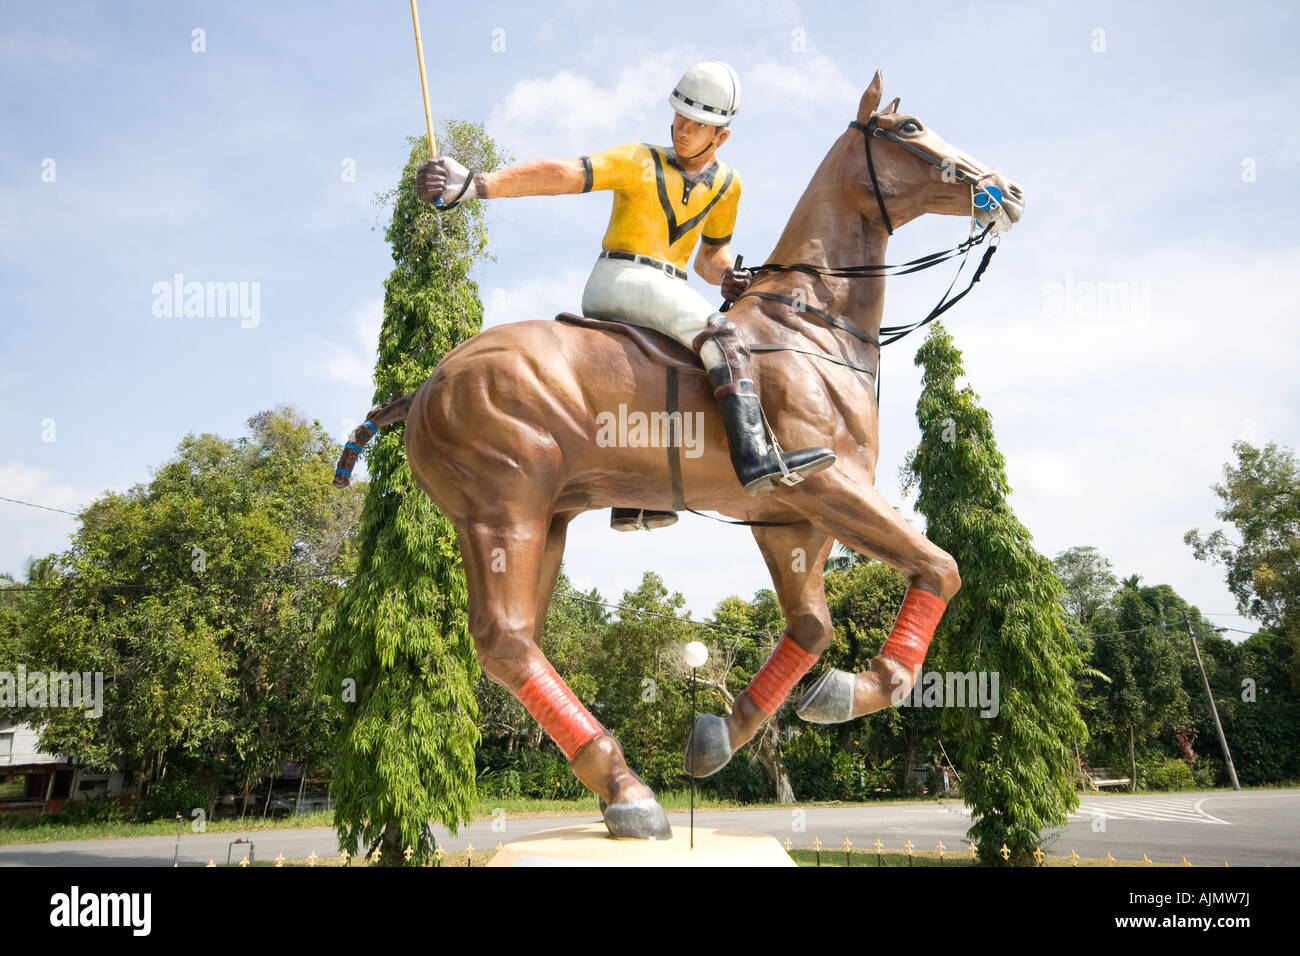 Le polo (sport équestre) - Royal Horse